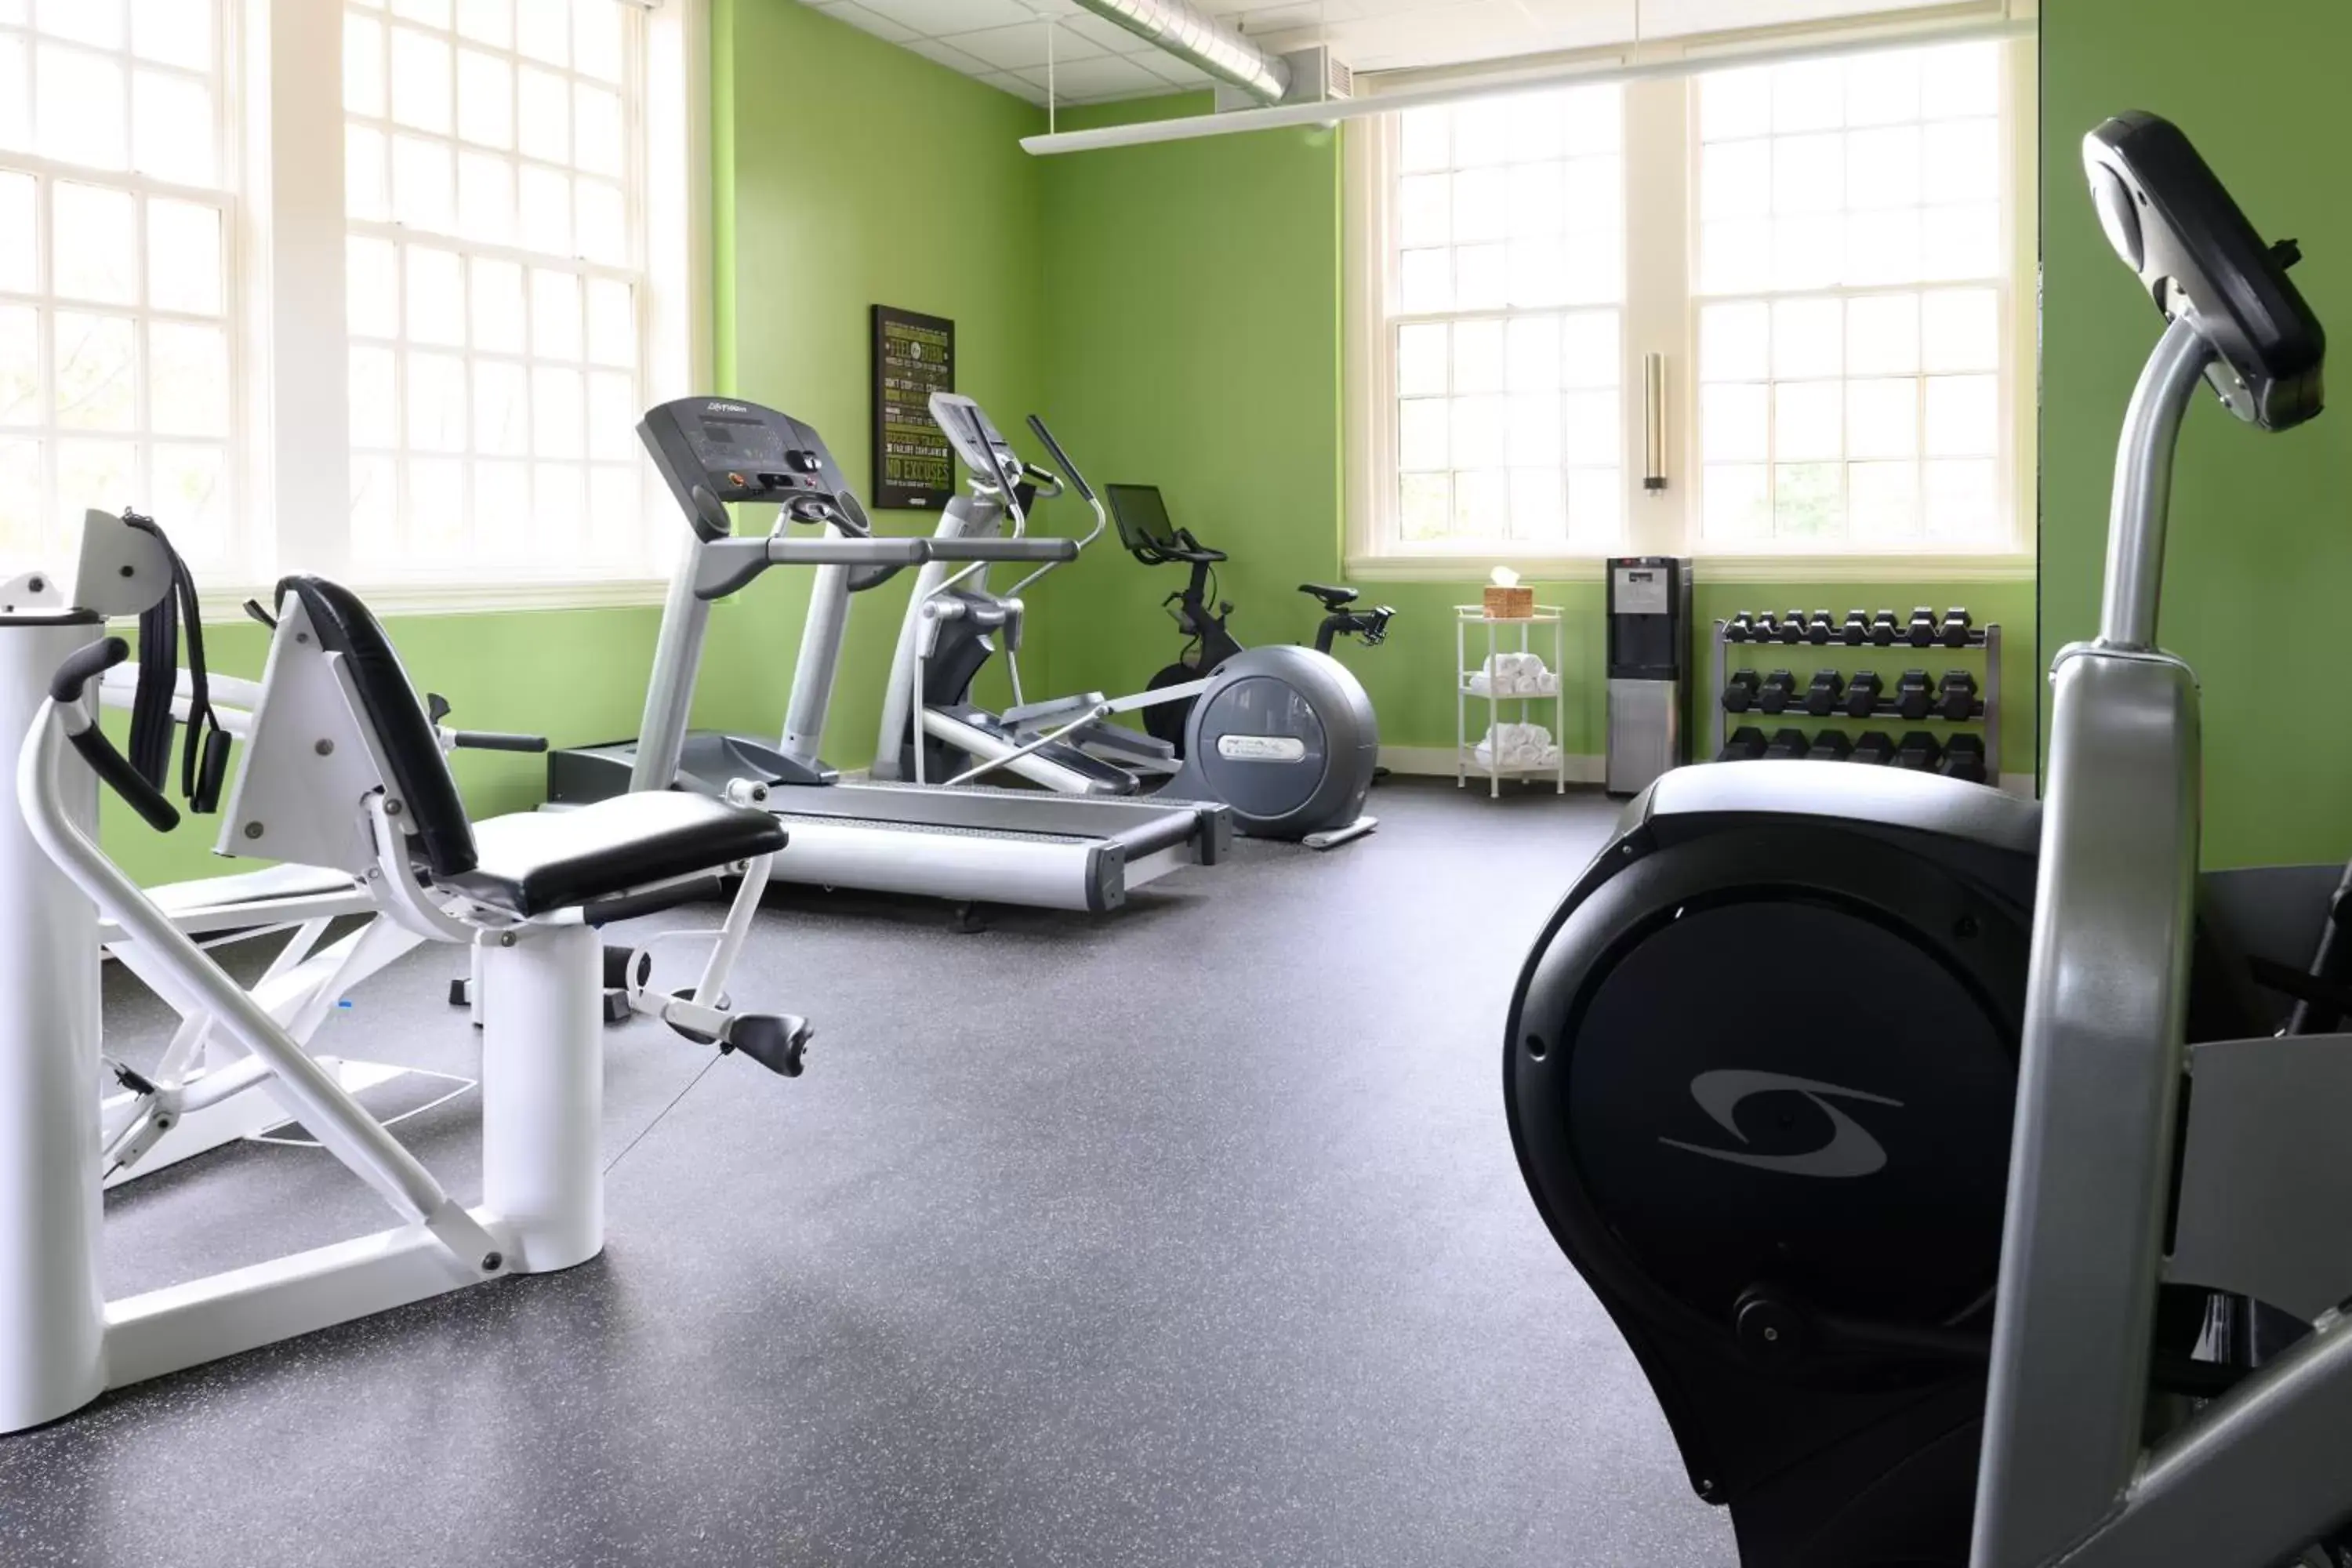 Fitness centre/facilities, Fitness Center/Facilities in Inns of Aurora Resort & Spa